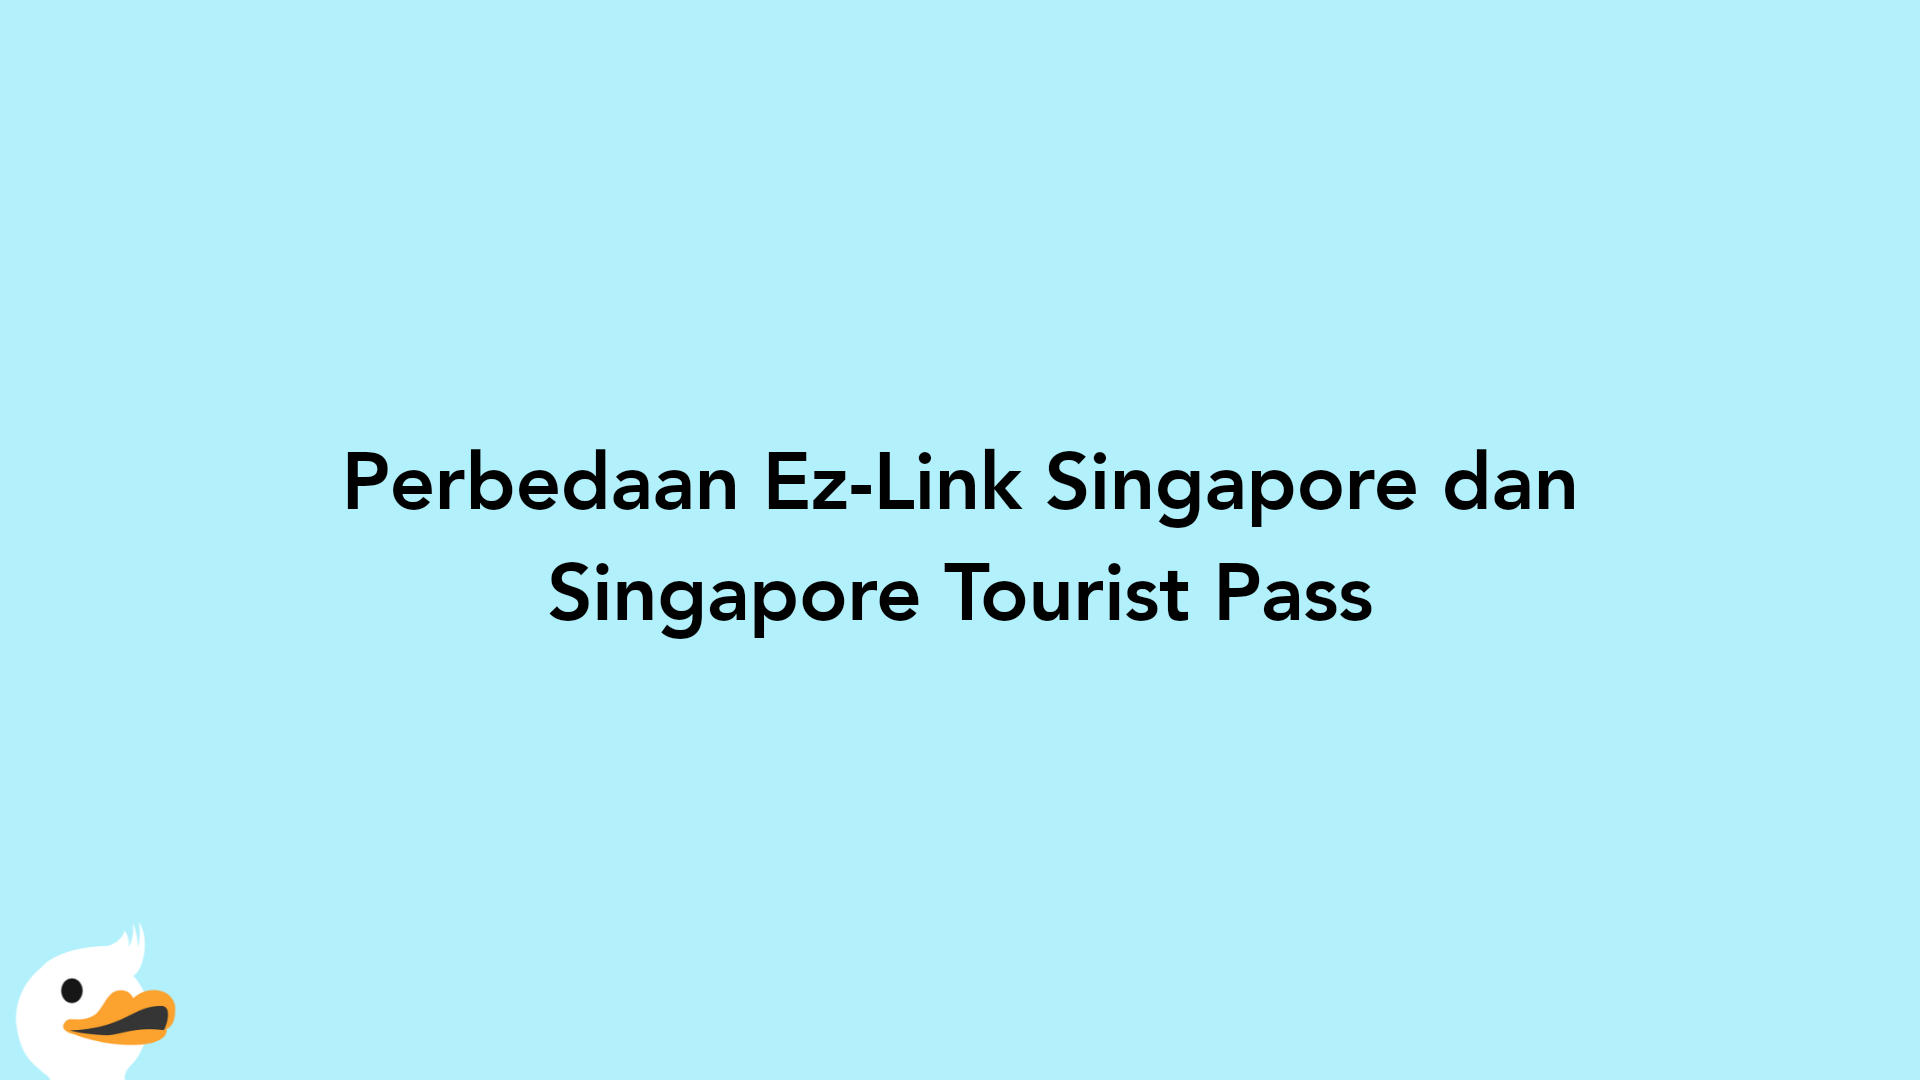 Perbedaan Ez-Link Singapore dan Singapore Tourist Pass